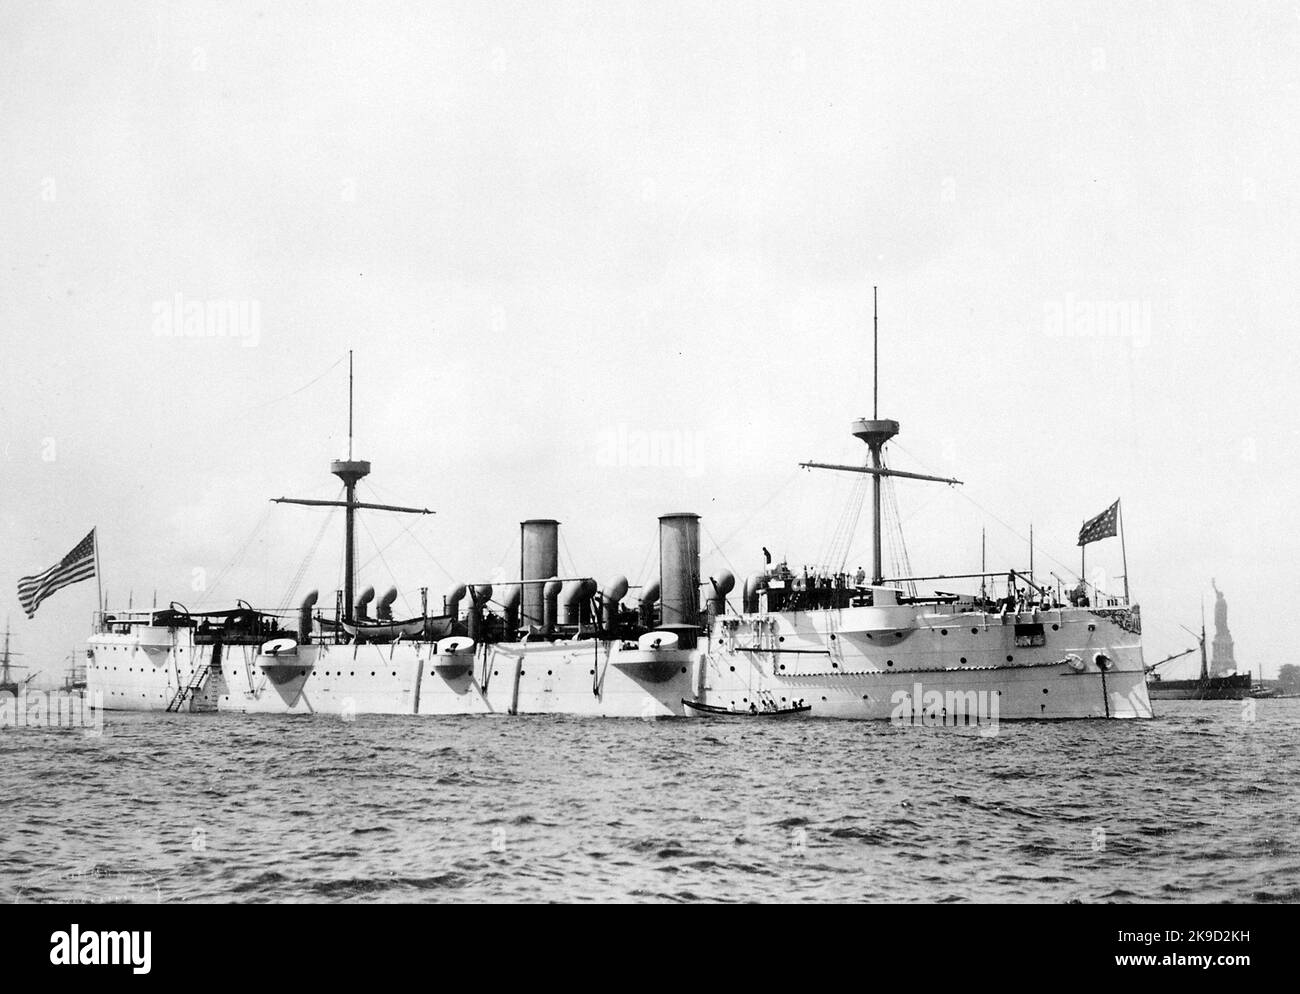 La quarta nave USS Baltimore (C-3) (in seguito CM-1) fu una nave da crociera della Marina degli Stati Uniti, la quinta nave da crociera protetta costruita da un cantiere americano. 1891 Foto Stock